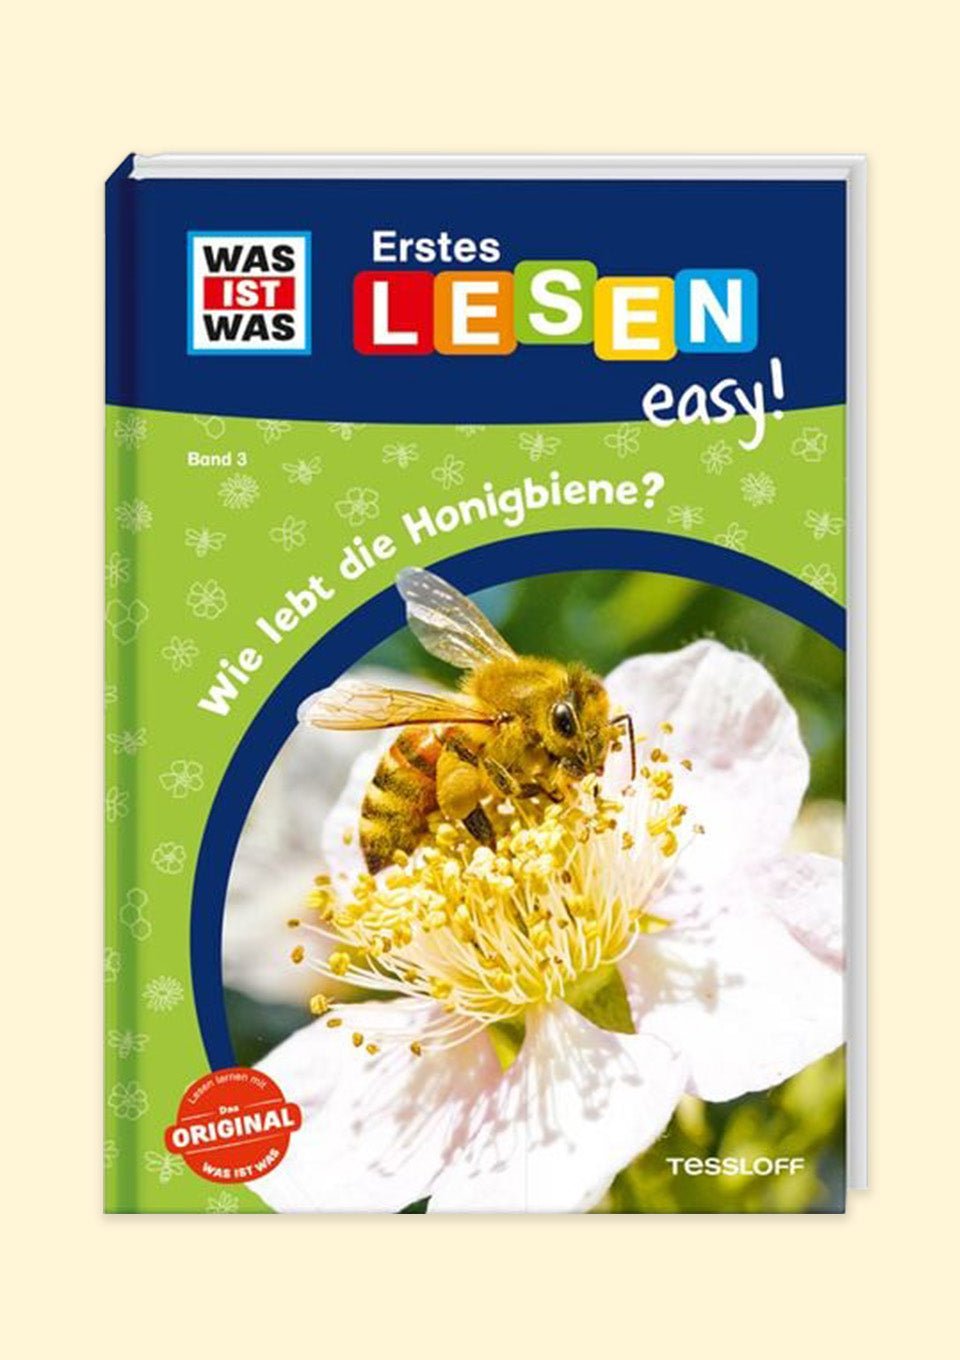 Tessloff WAS IST WAS Erstes Lesen easy! "Wie lebt die Honigbiene?" - tiny-boon.com